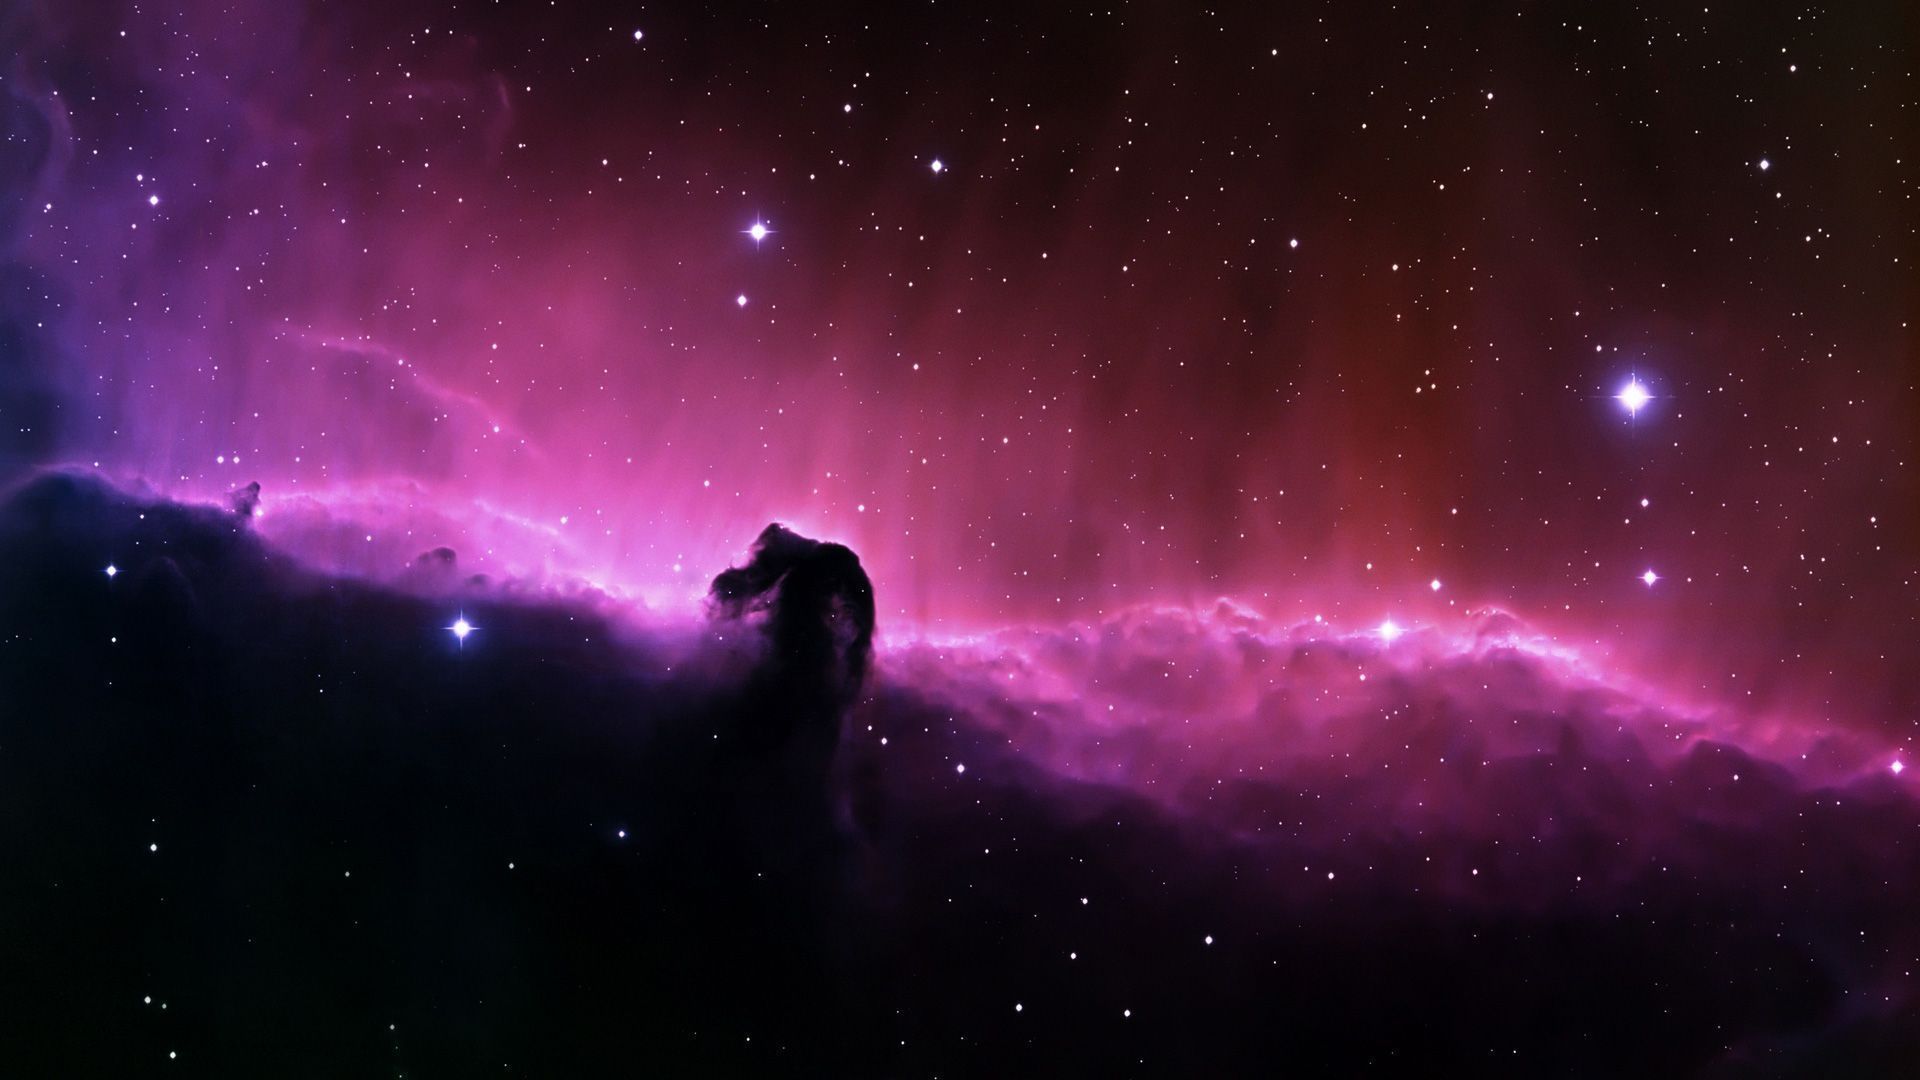 Nebula HD Wallpaper | 1920x1080 | ID:17626